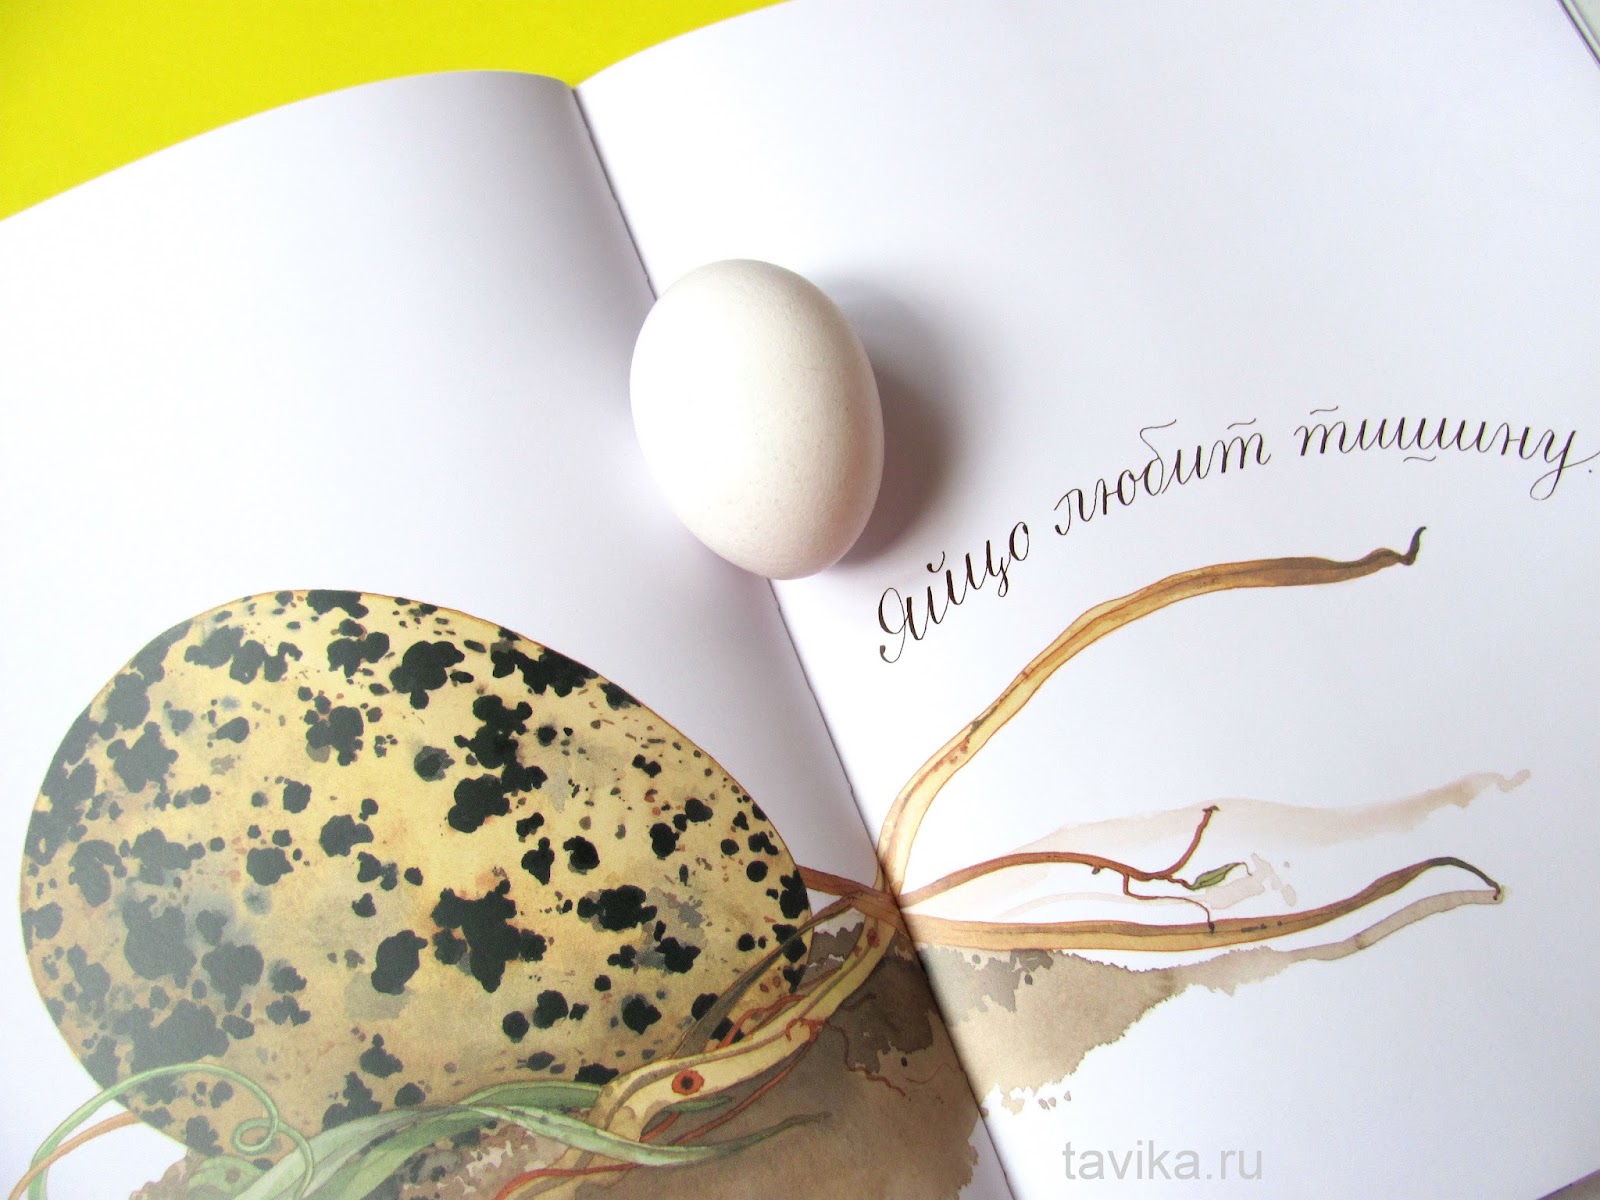 Книга про яйца. Яйцо любит тишину. Яйцо занятия по книге материалы идеи. Книга с яйцом на обложке. Обожает яйца